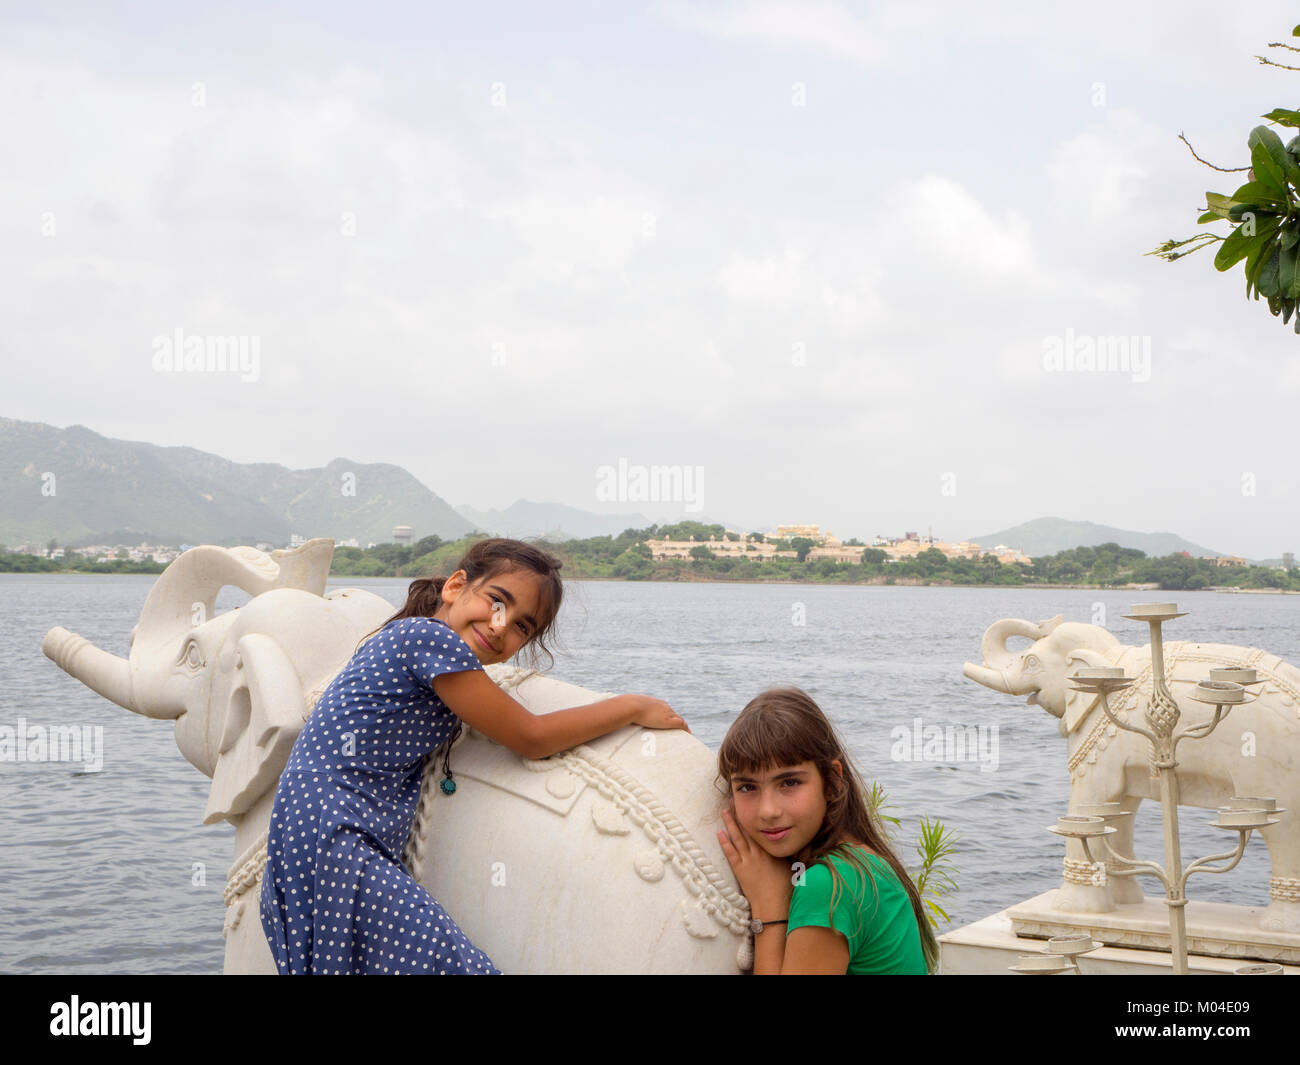 Une photo de deux belles filles soeur touristiques bénéficiant à un lac Indian Summer palace au Rajasthan Inde Banque D'Images